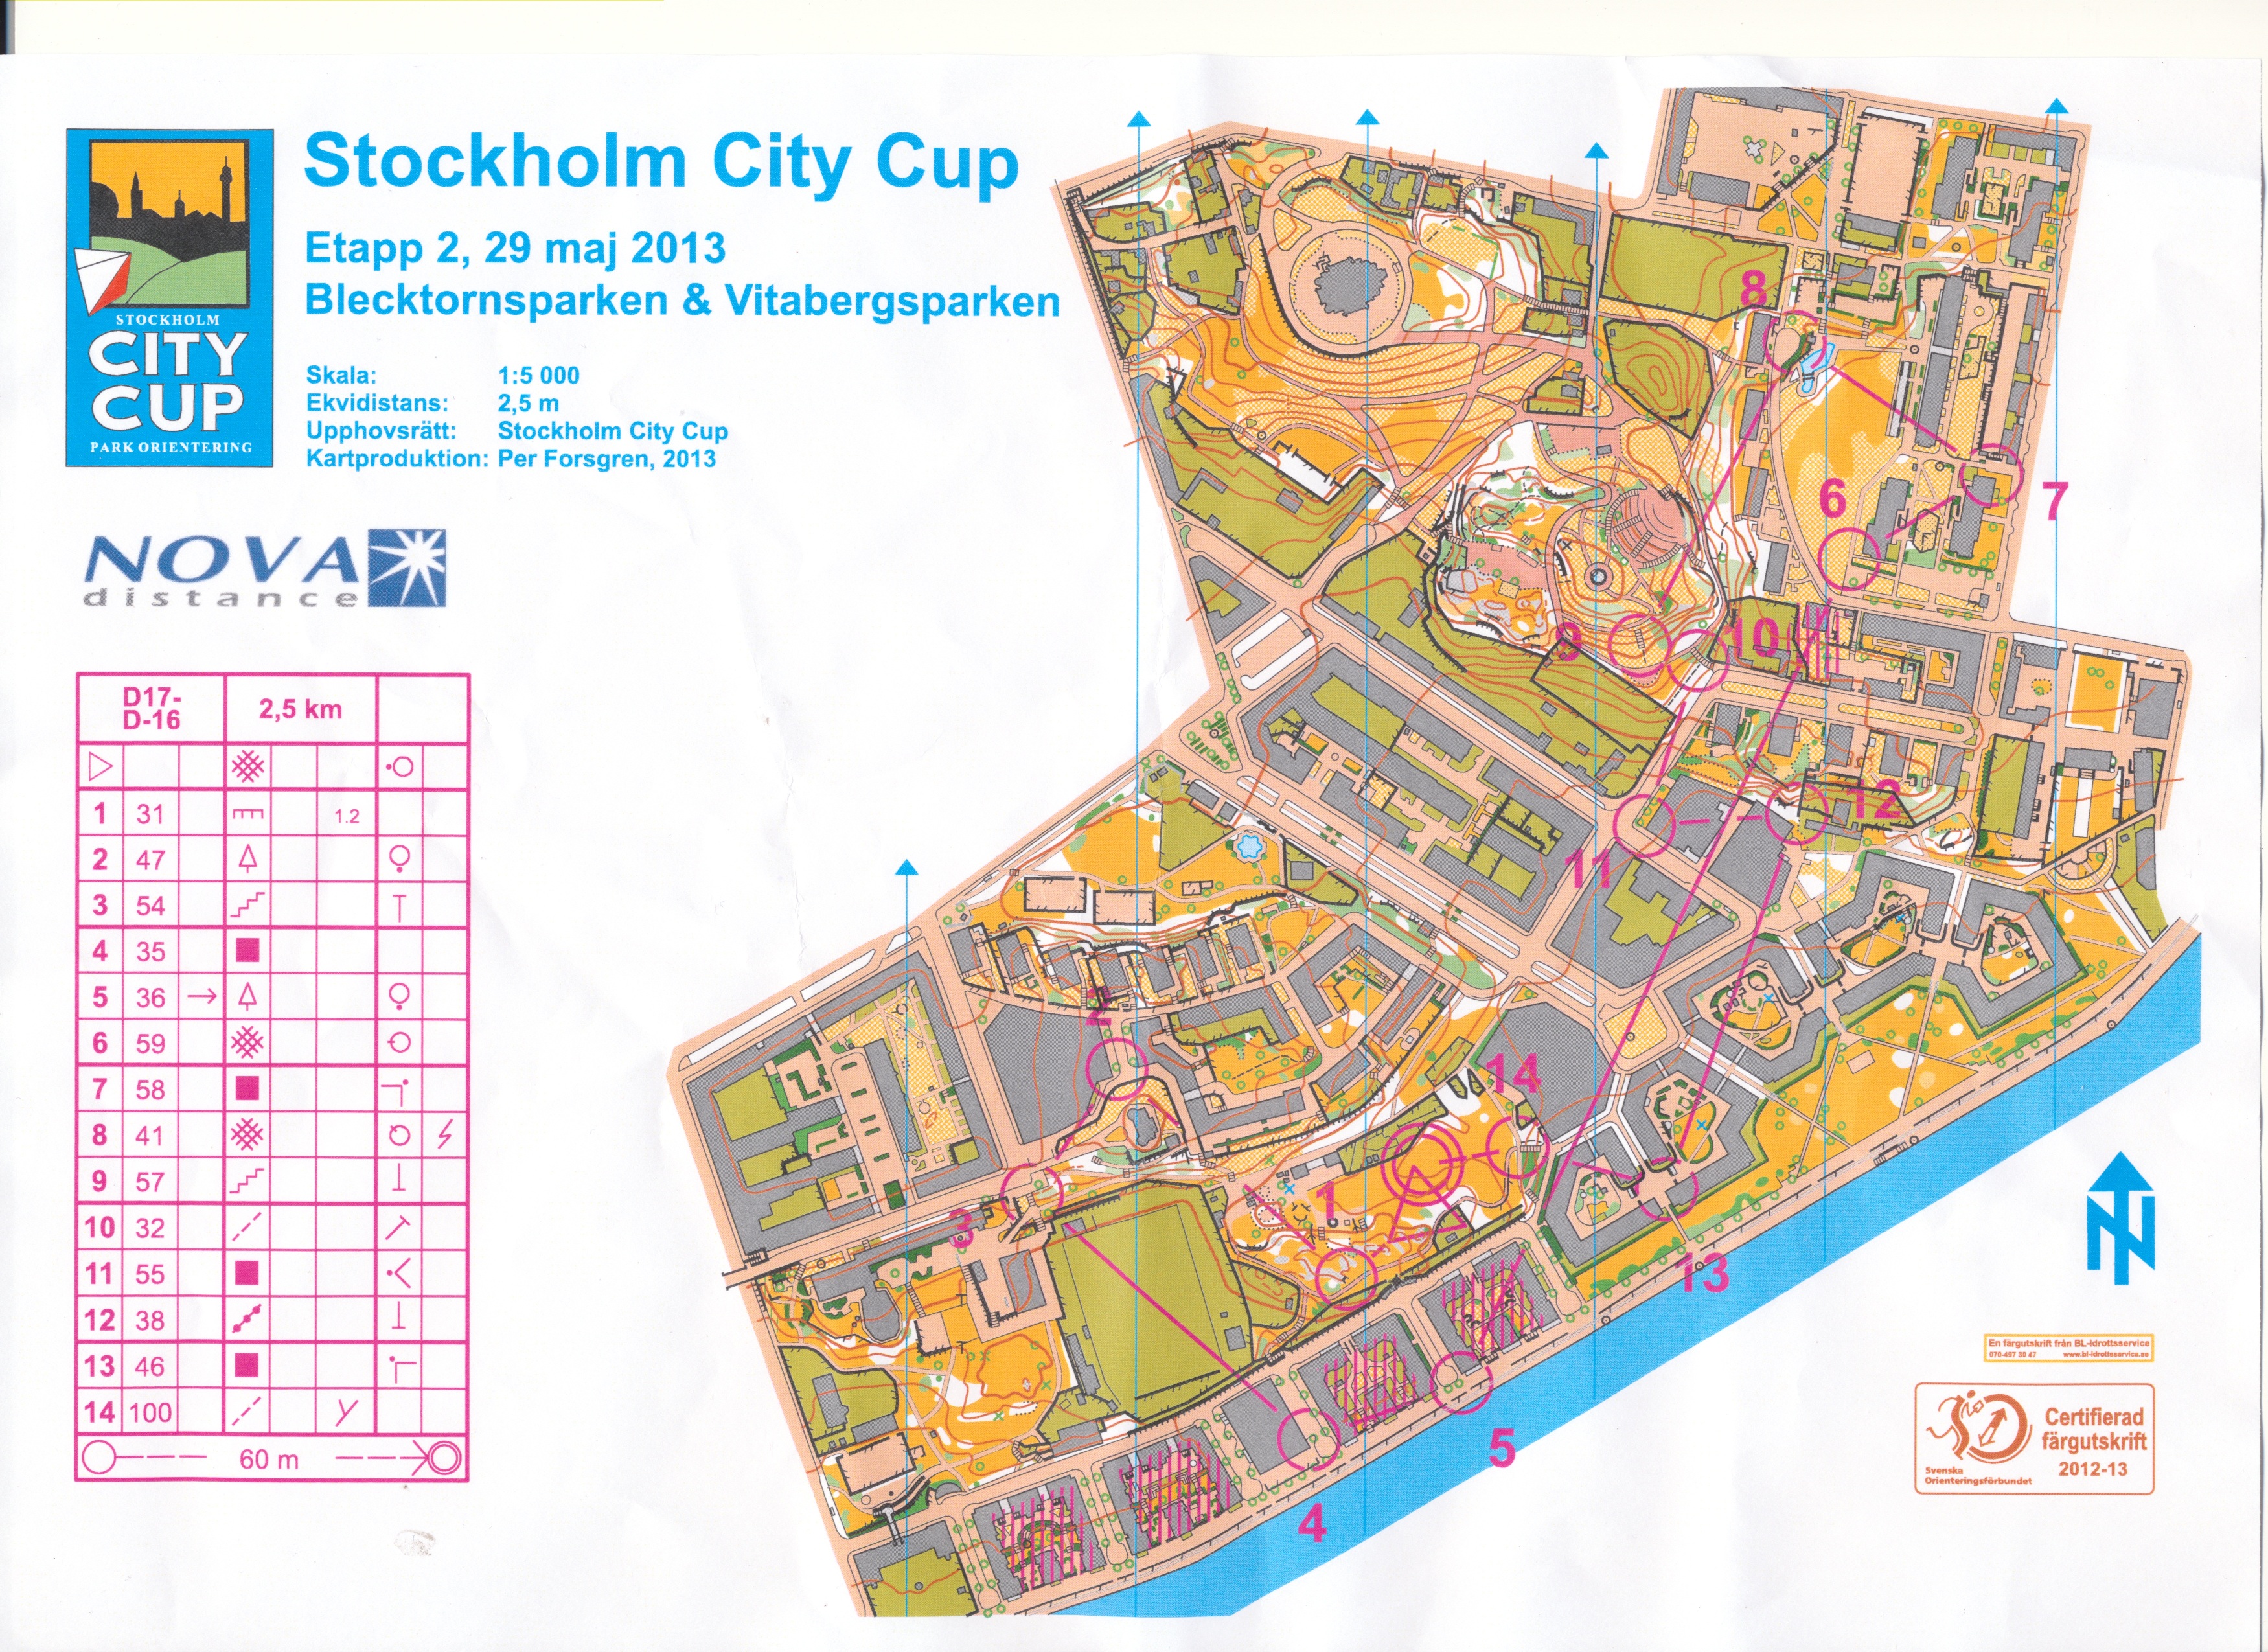 Stockholm City Cup E2 (29-05-2013)